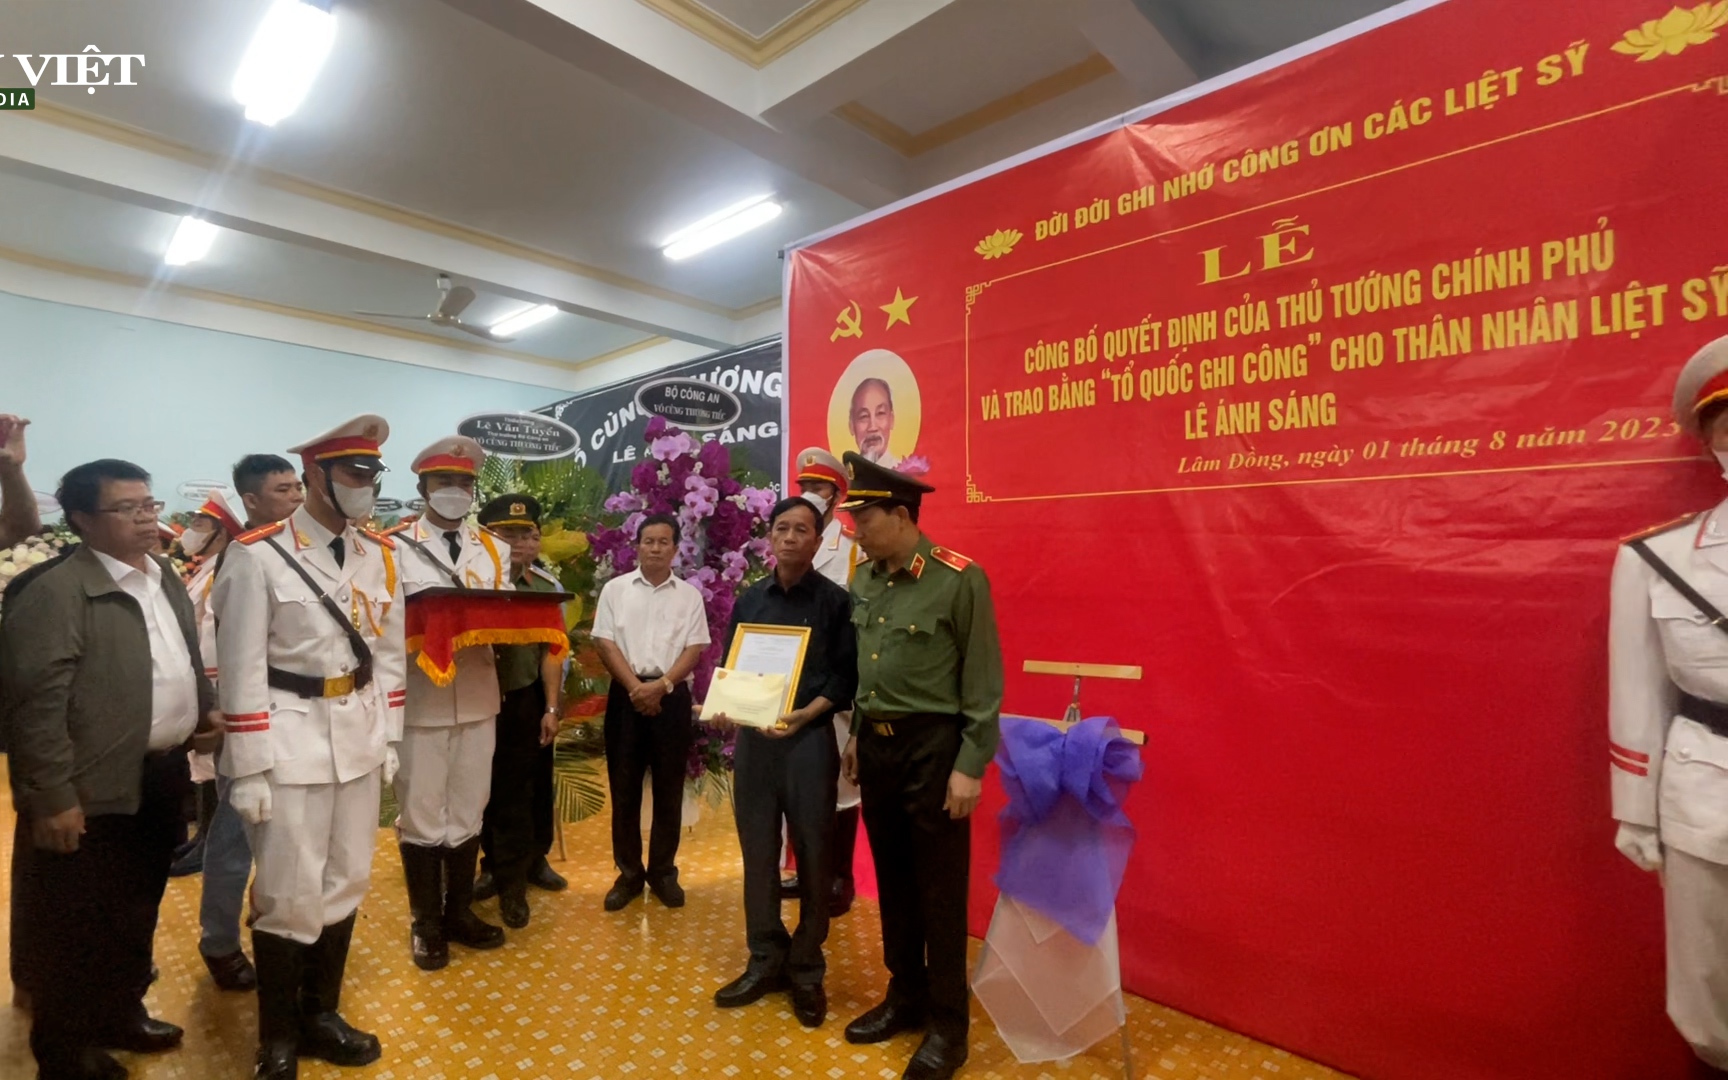 Xúc động lễ trao bằng Tổ quốc ghi công cho thân nhân các liệt sĩ hy sinh trong vụ sạt lở đèo Bảo Lộc